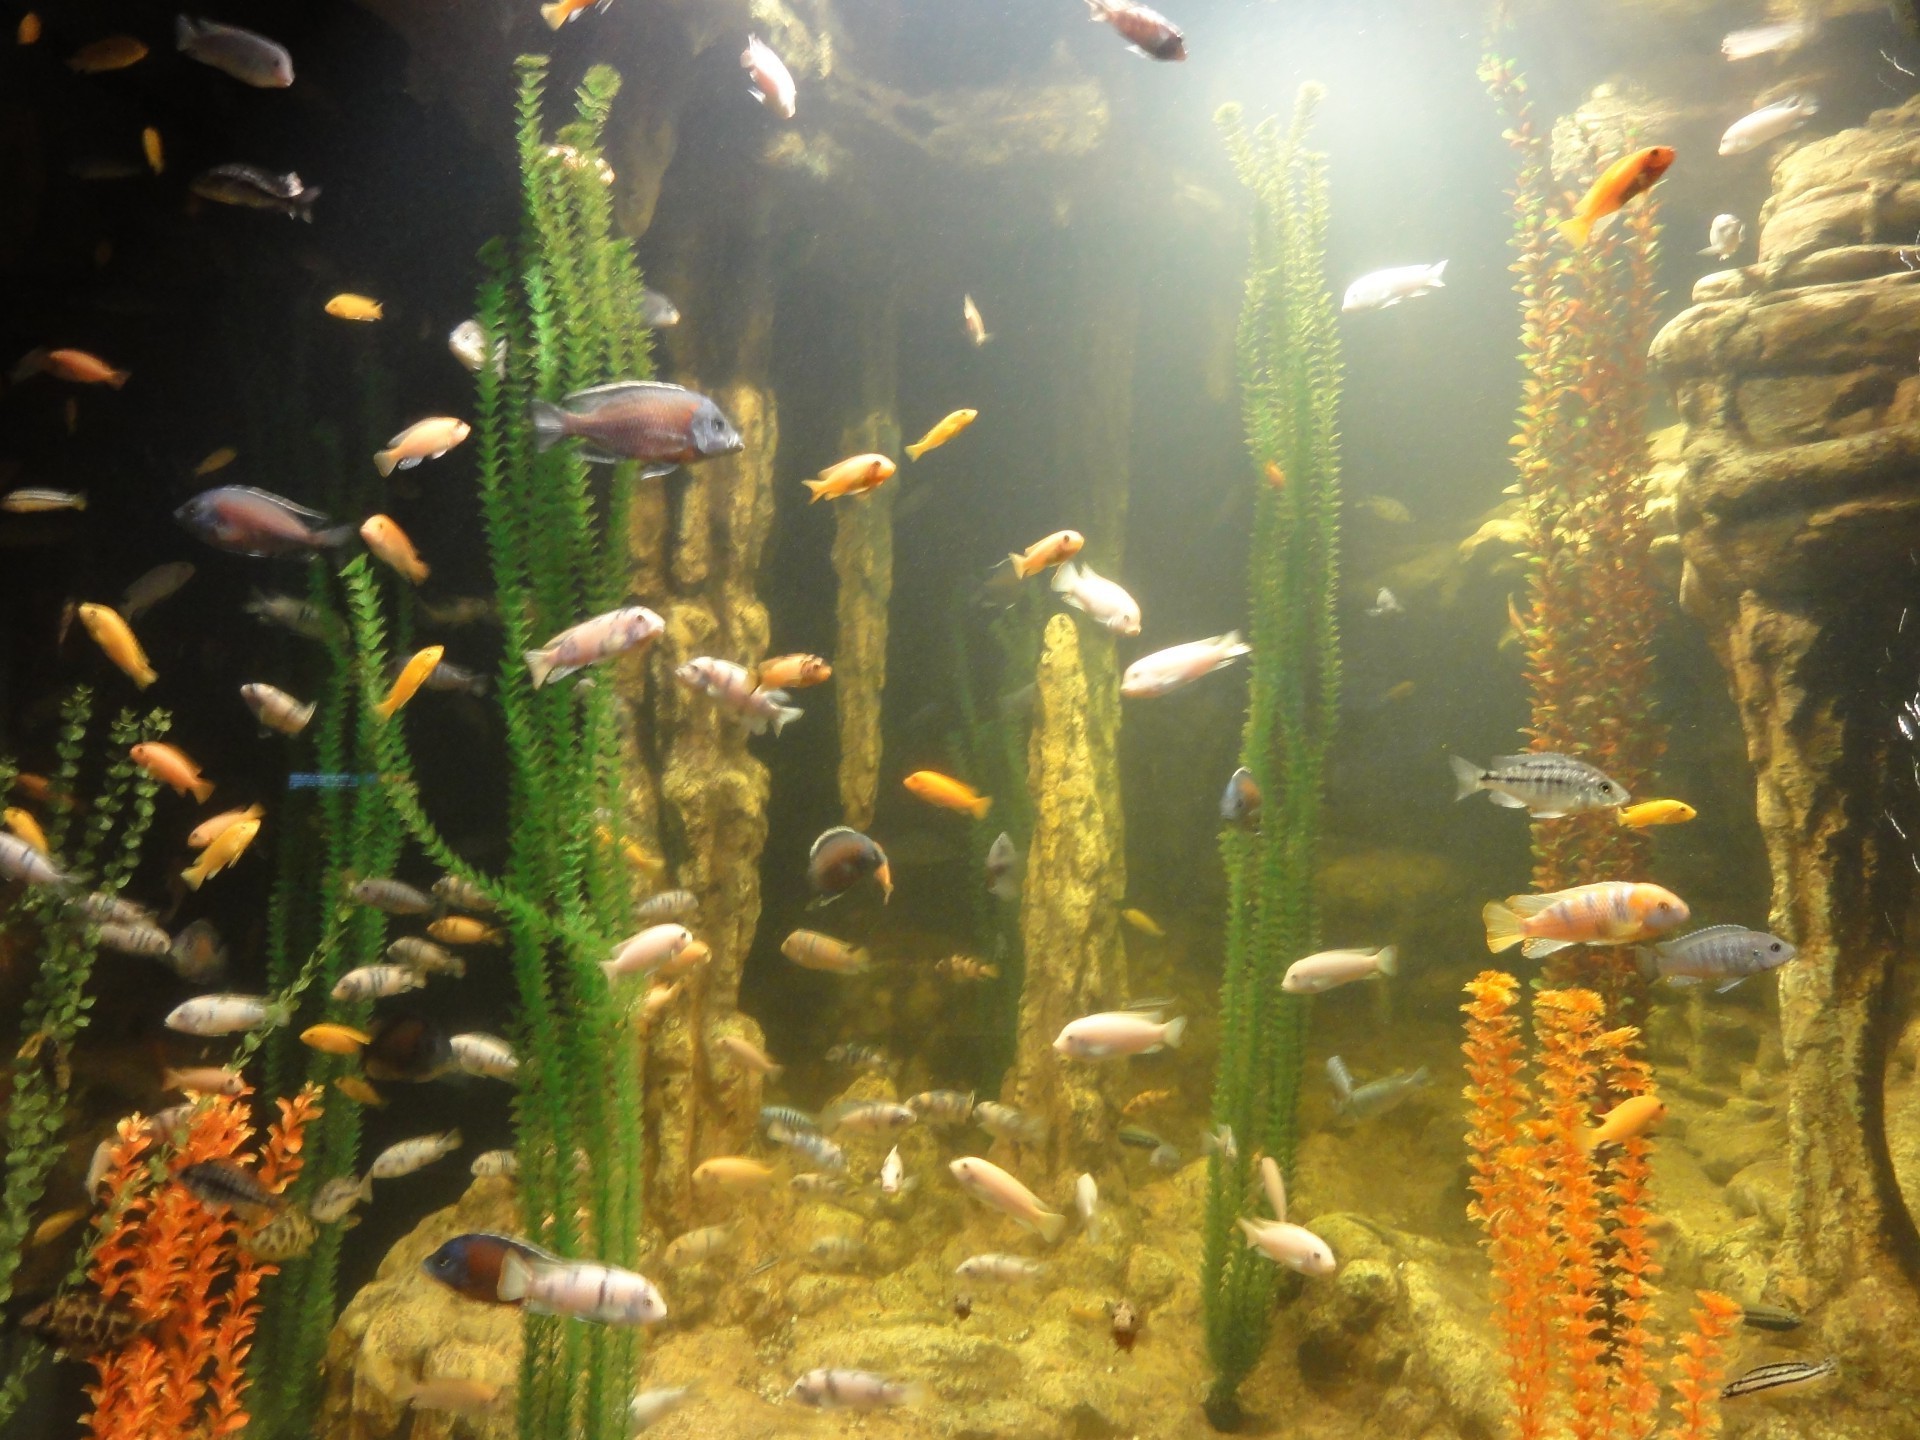 животные подводный аквариум рыбы золотая рыбка воды танк плавание глубокий дайвинг коралловый водный тропический риф природа океан презентация экзотические подводная лодка среды